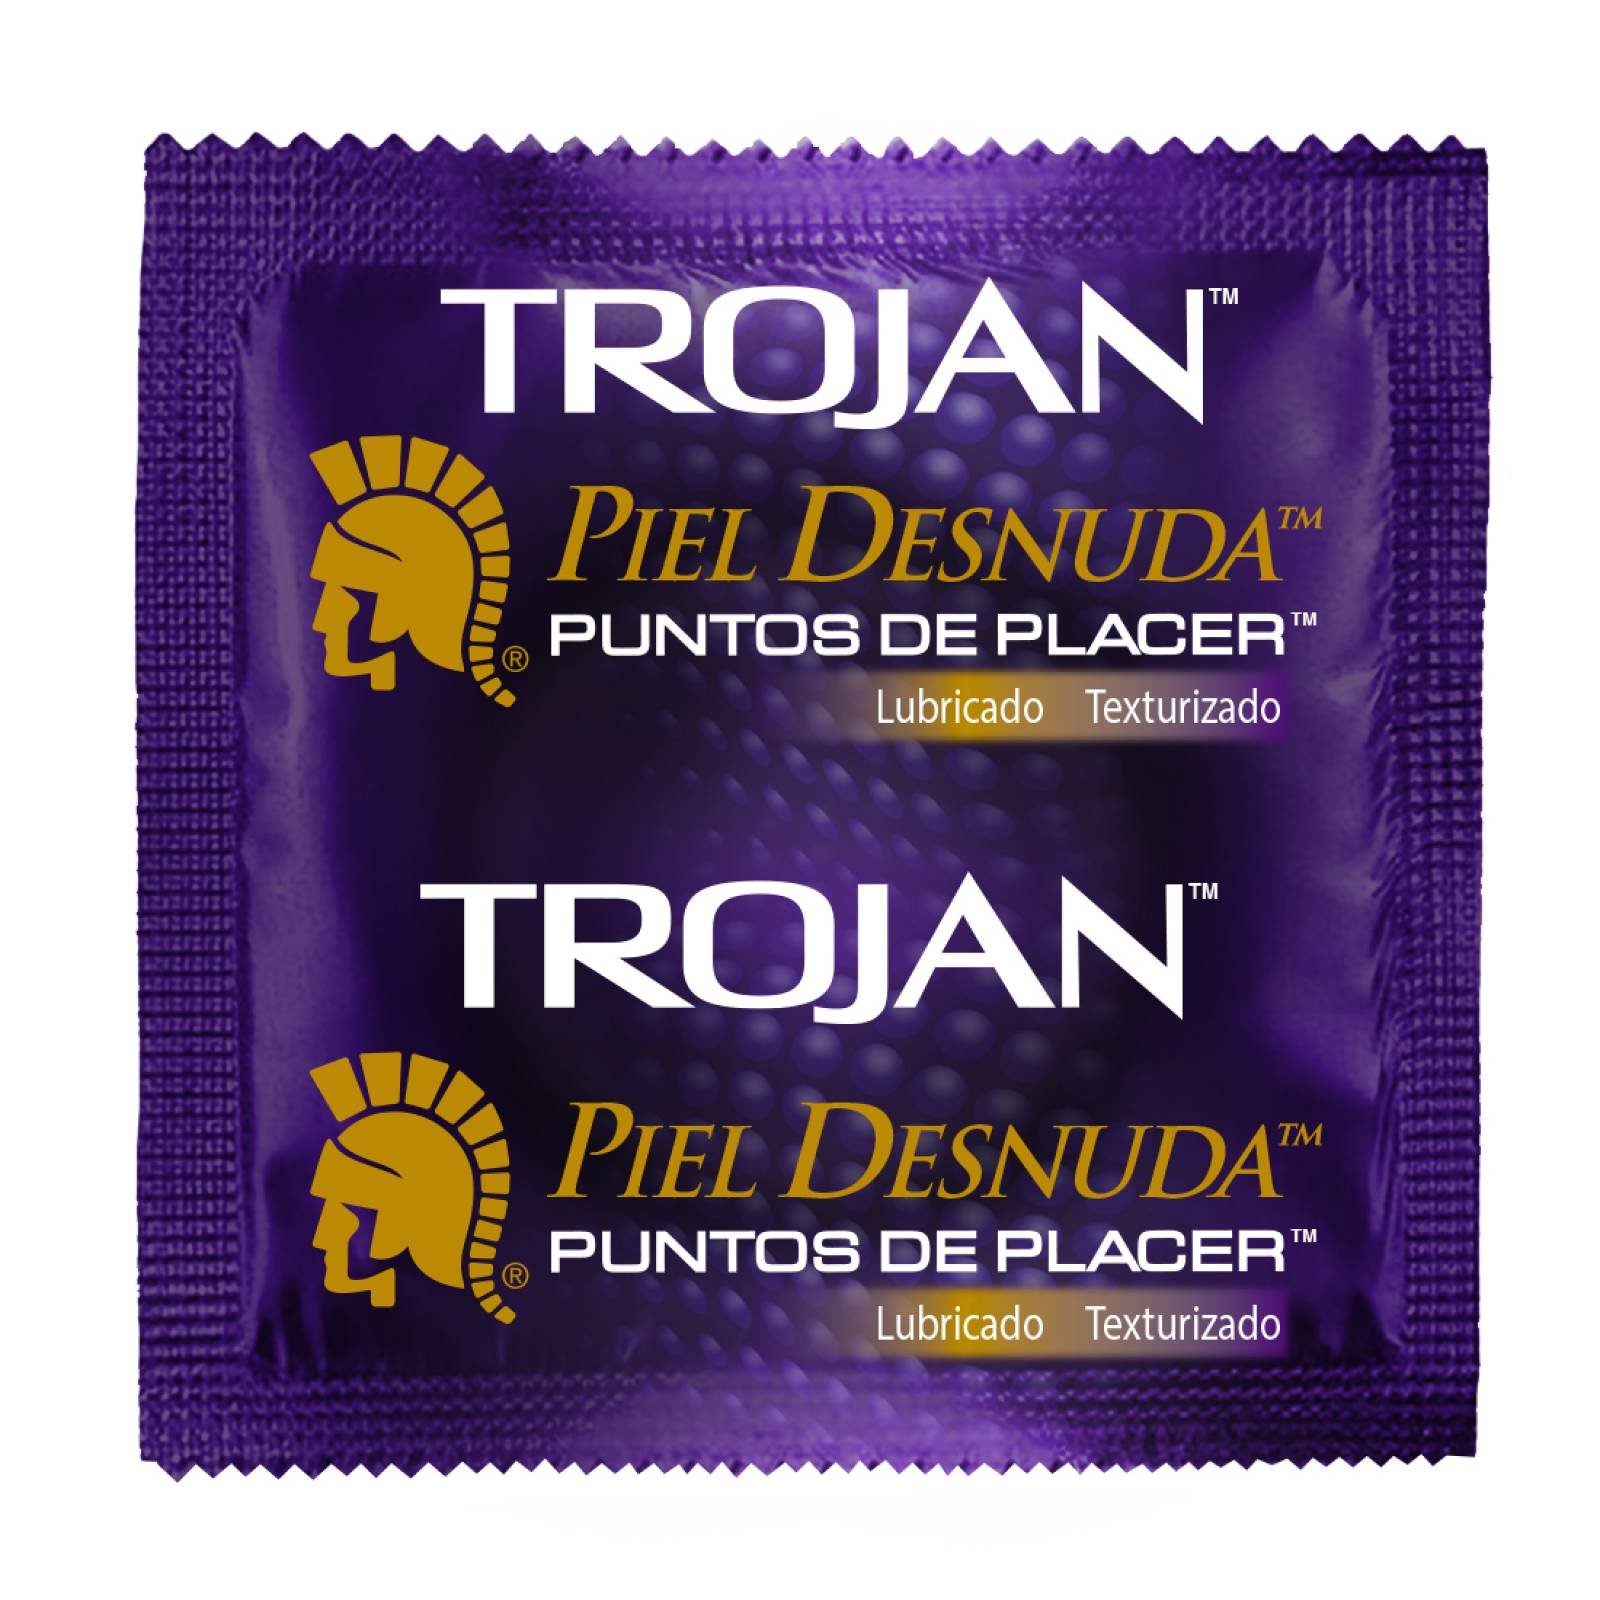 Condón Piel Desnuda Puntos de Placer Pack 3 piezas Trojan